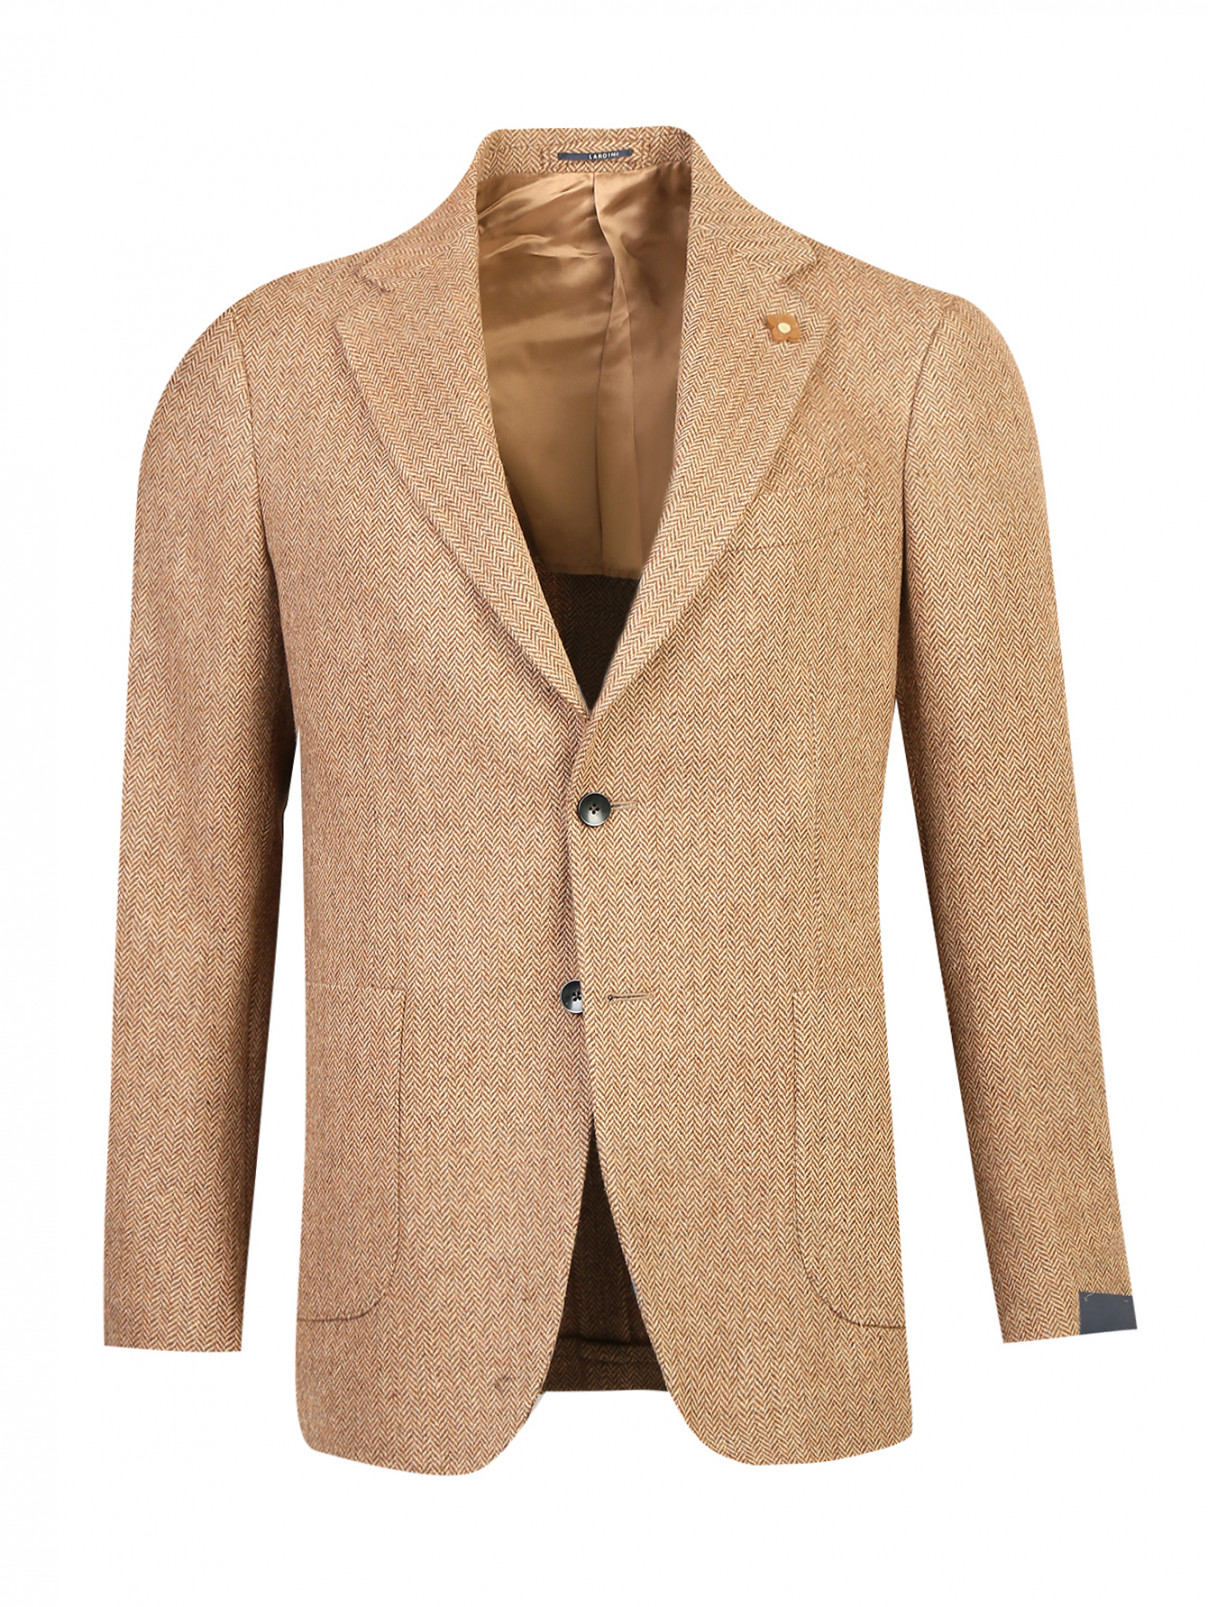 Пиджак однобортный из шерсти LARDINI  –  Общий вид  – Цвет:  Коричневый